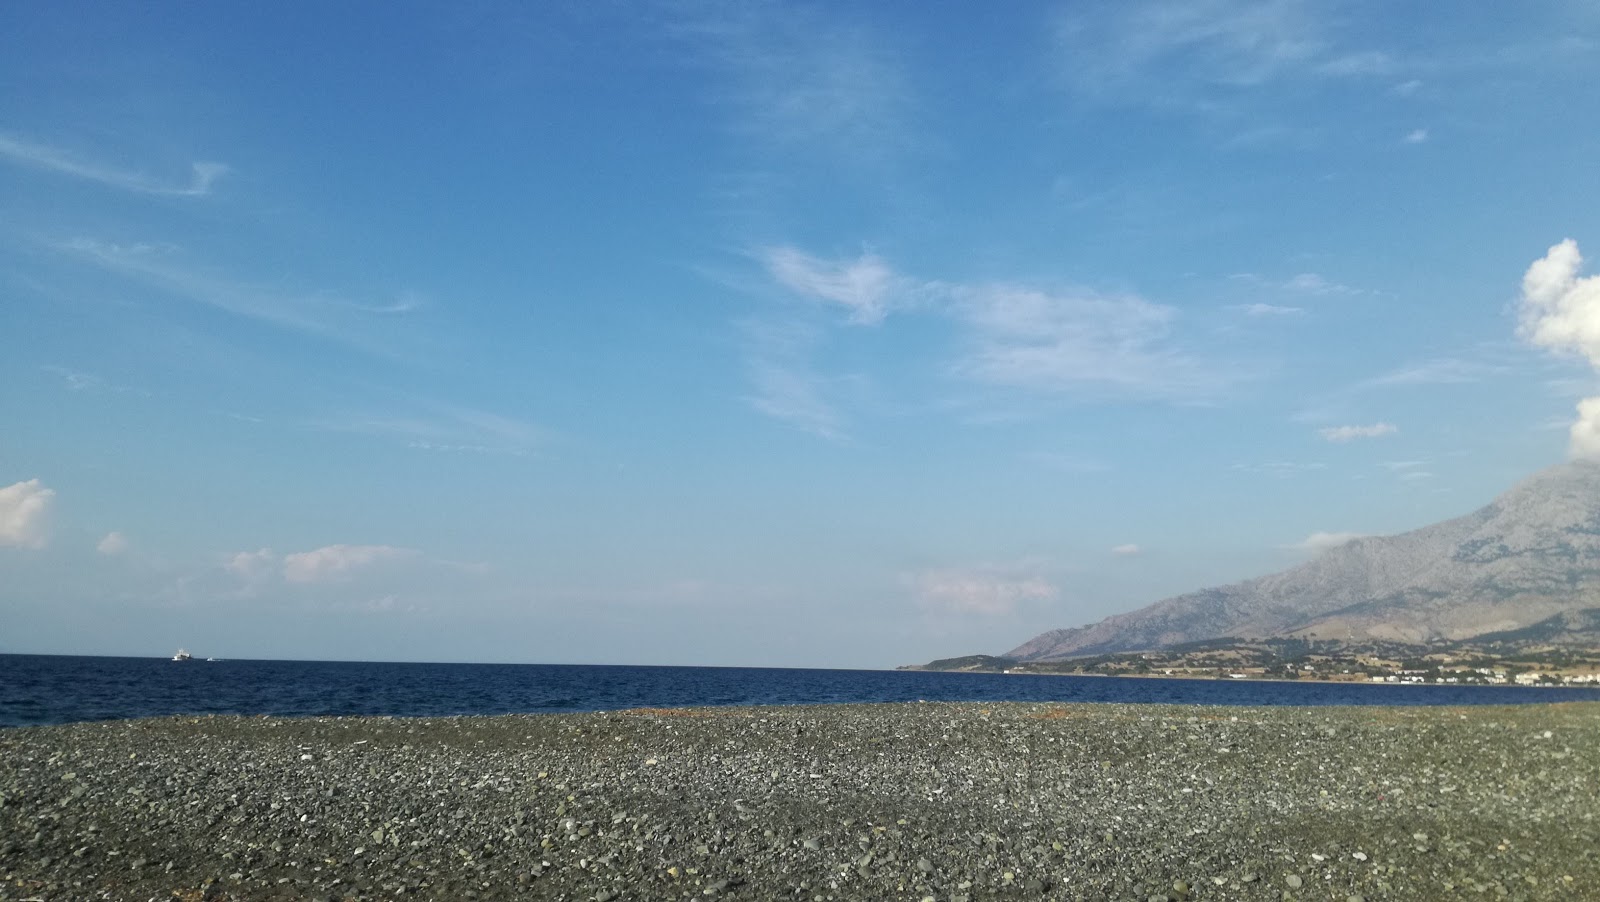 Zdjęcie Kamariotisa beach z powierzchnią niebieska czysta woda